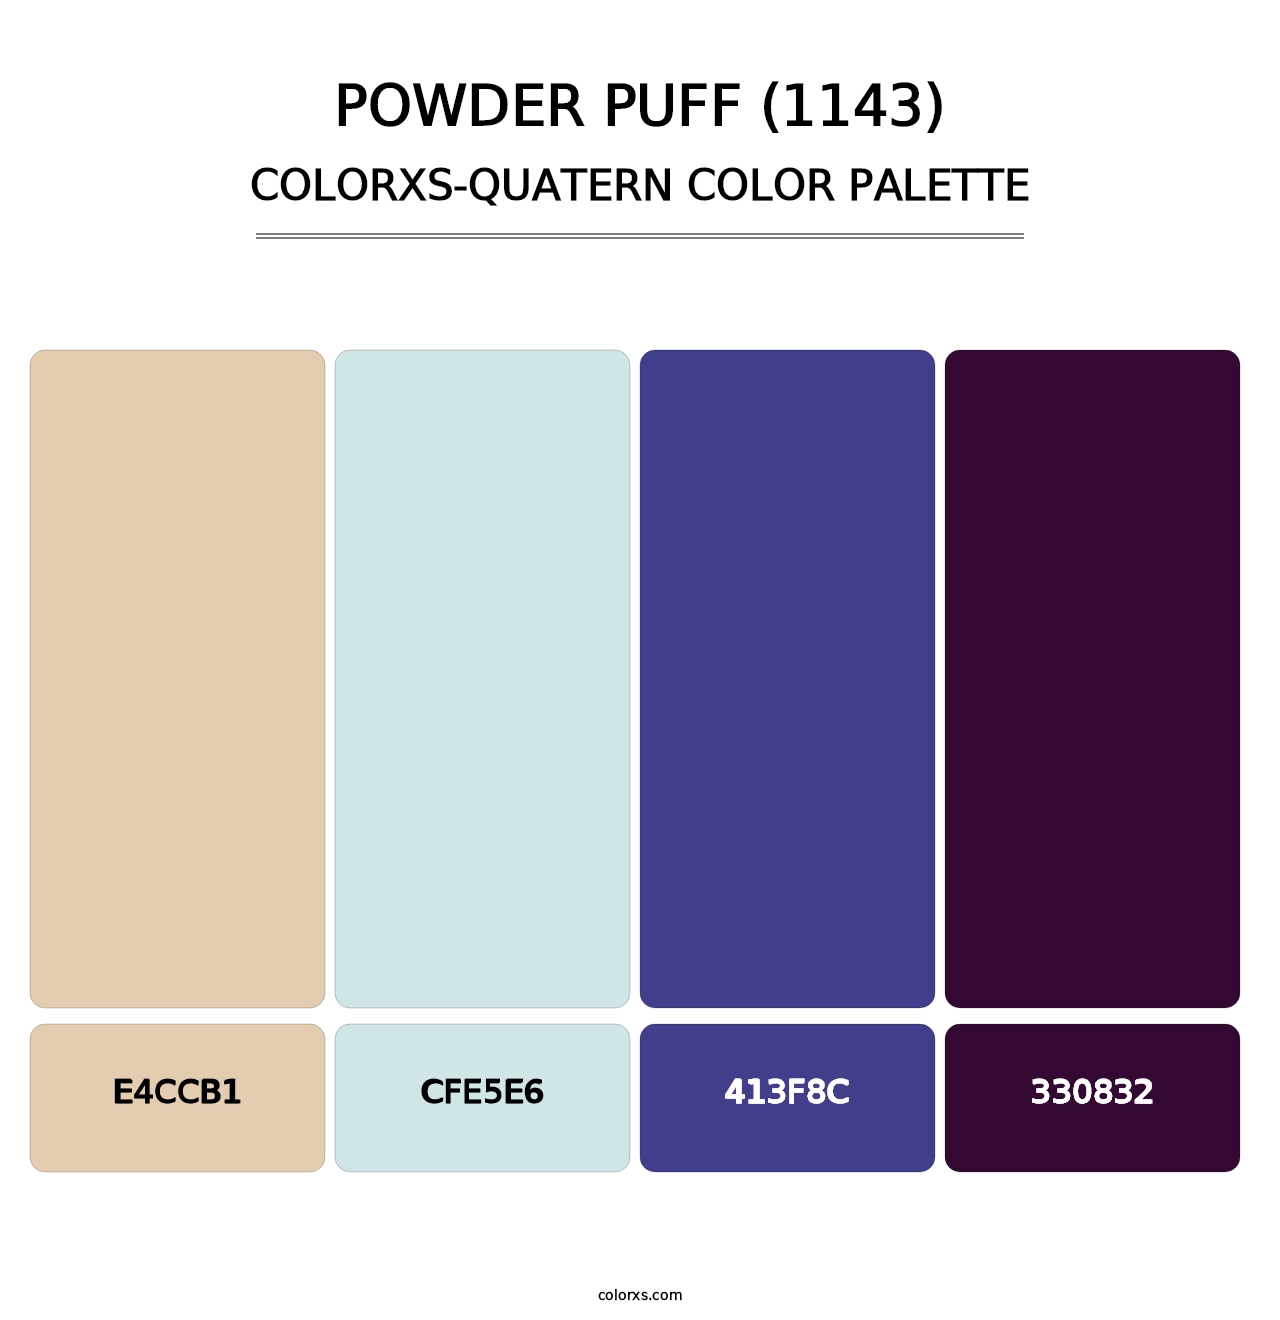 Powder Puff (1143) - Colorxs Quatern Palette